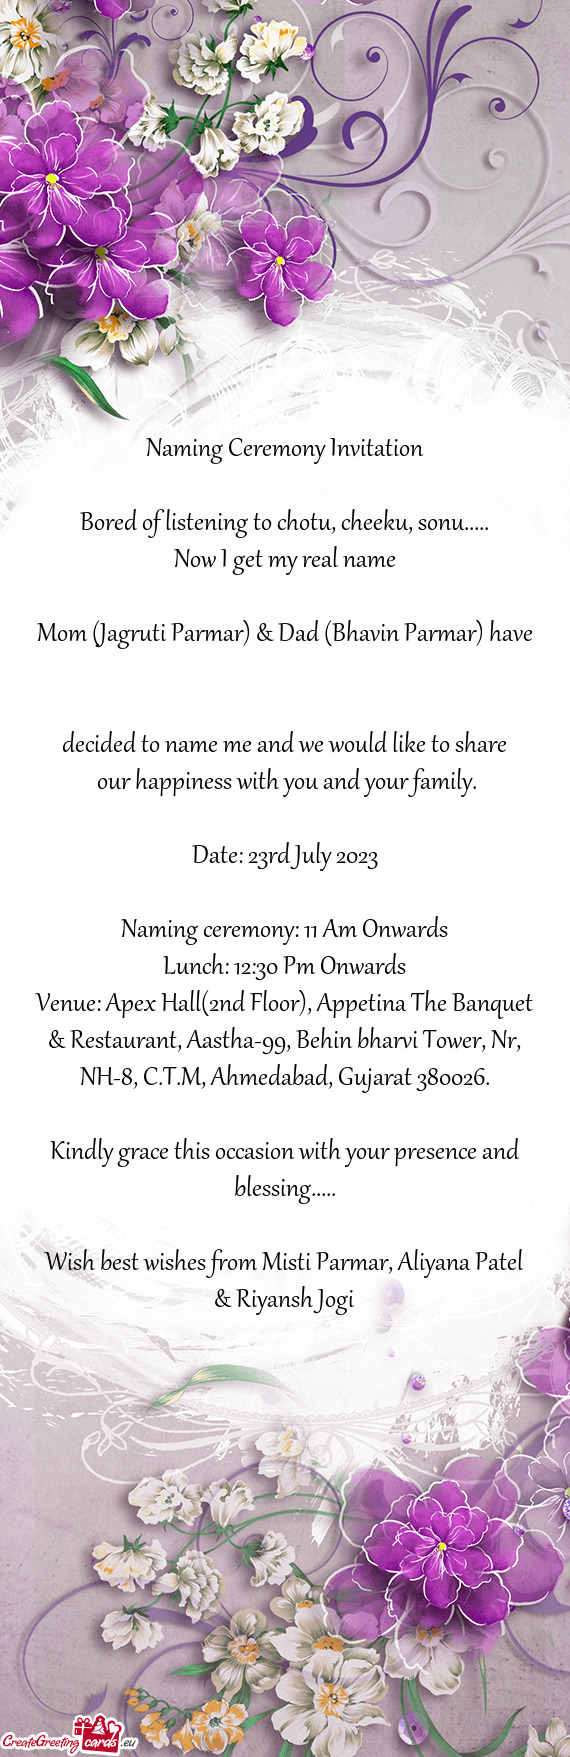 Mom (Jagruti Parmar) & Dad (Bhavin Parmar) have